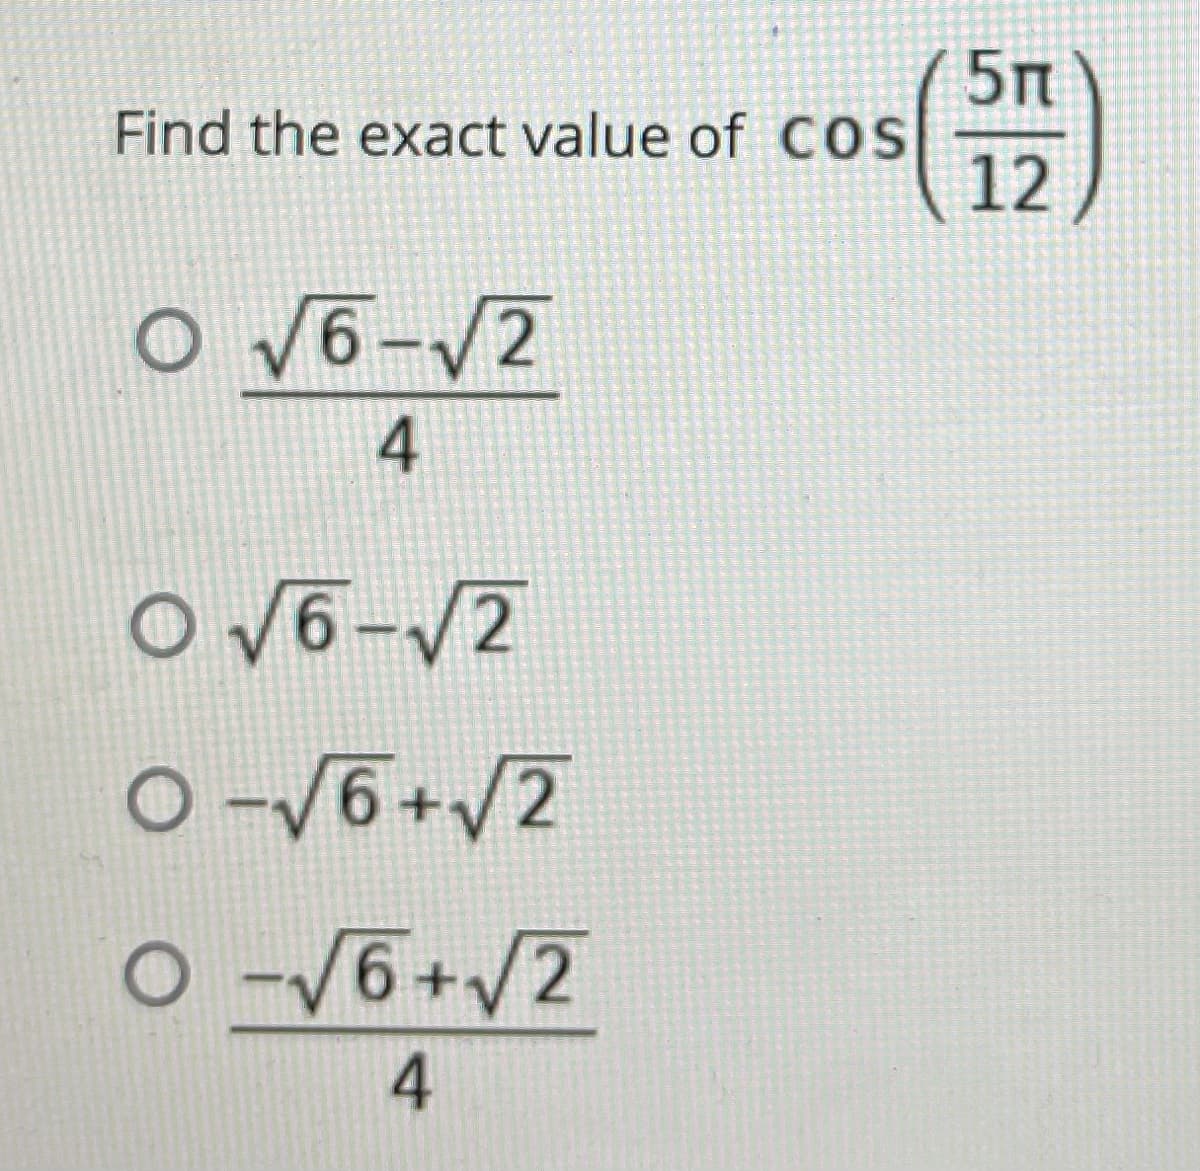 5п
Find the exact value of COS
12
o V6-/2
4
O V6-V2
O-V6+/2
O -/6+/2
4.
